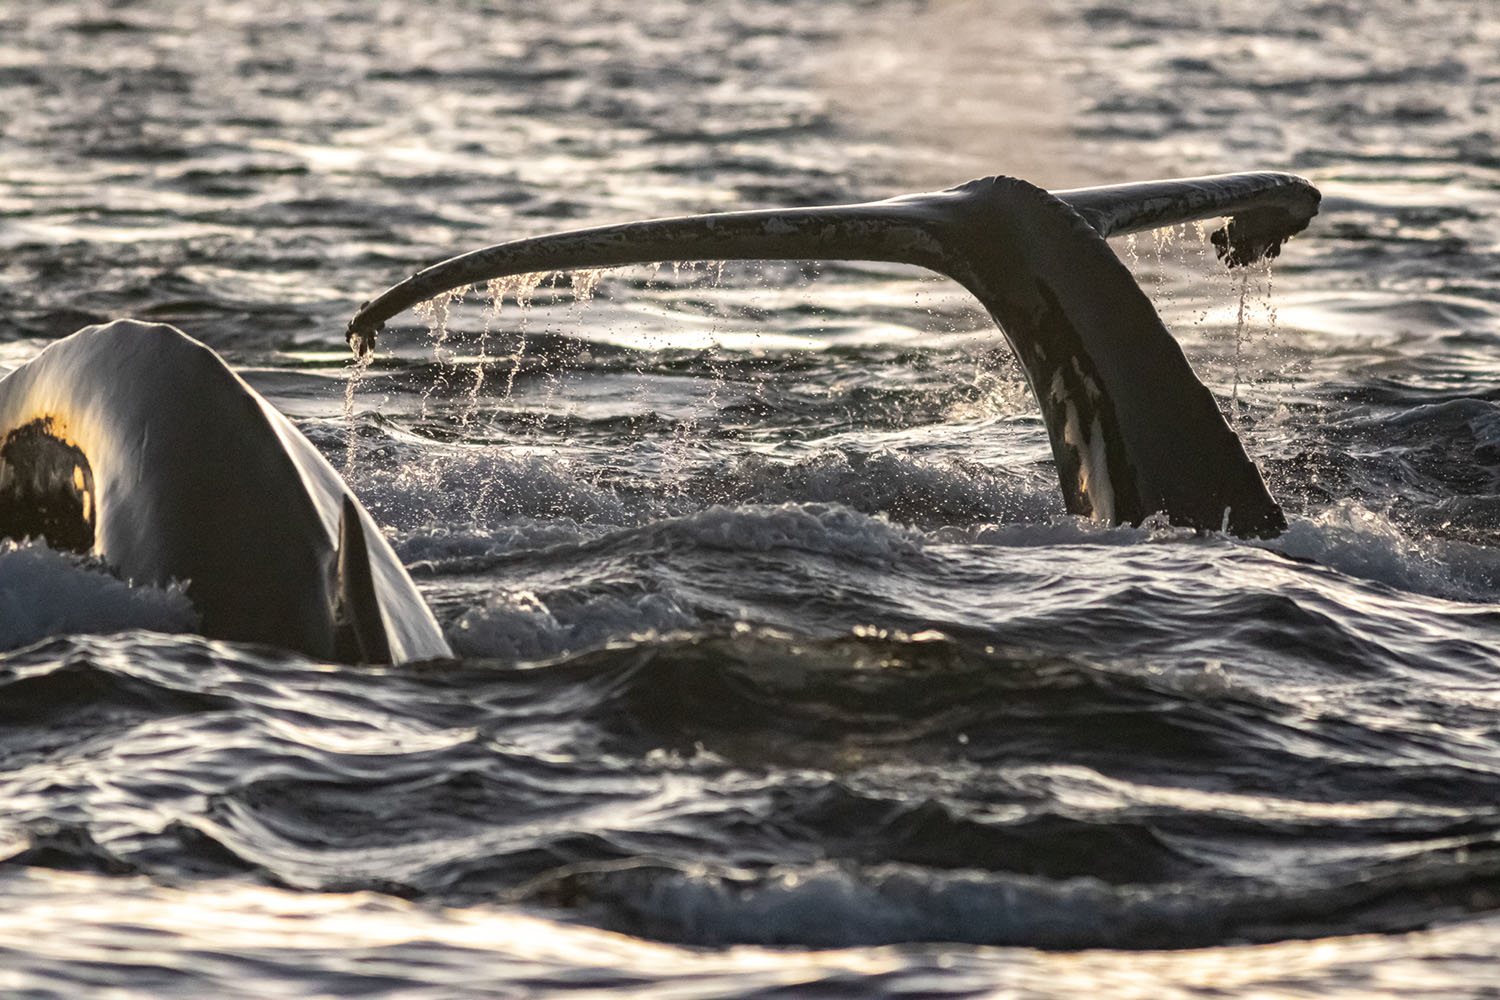 voyage scientifique - orques et baleines a bosse de norvege 34